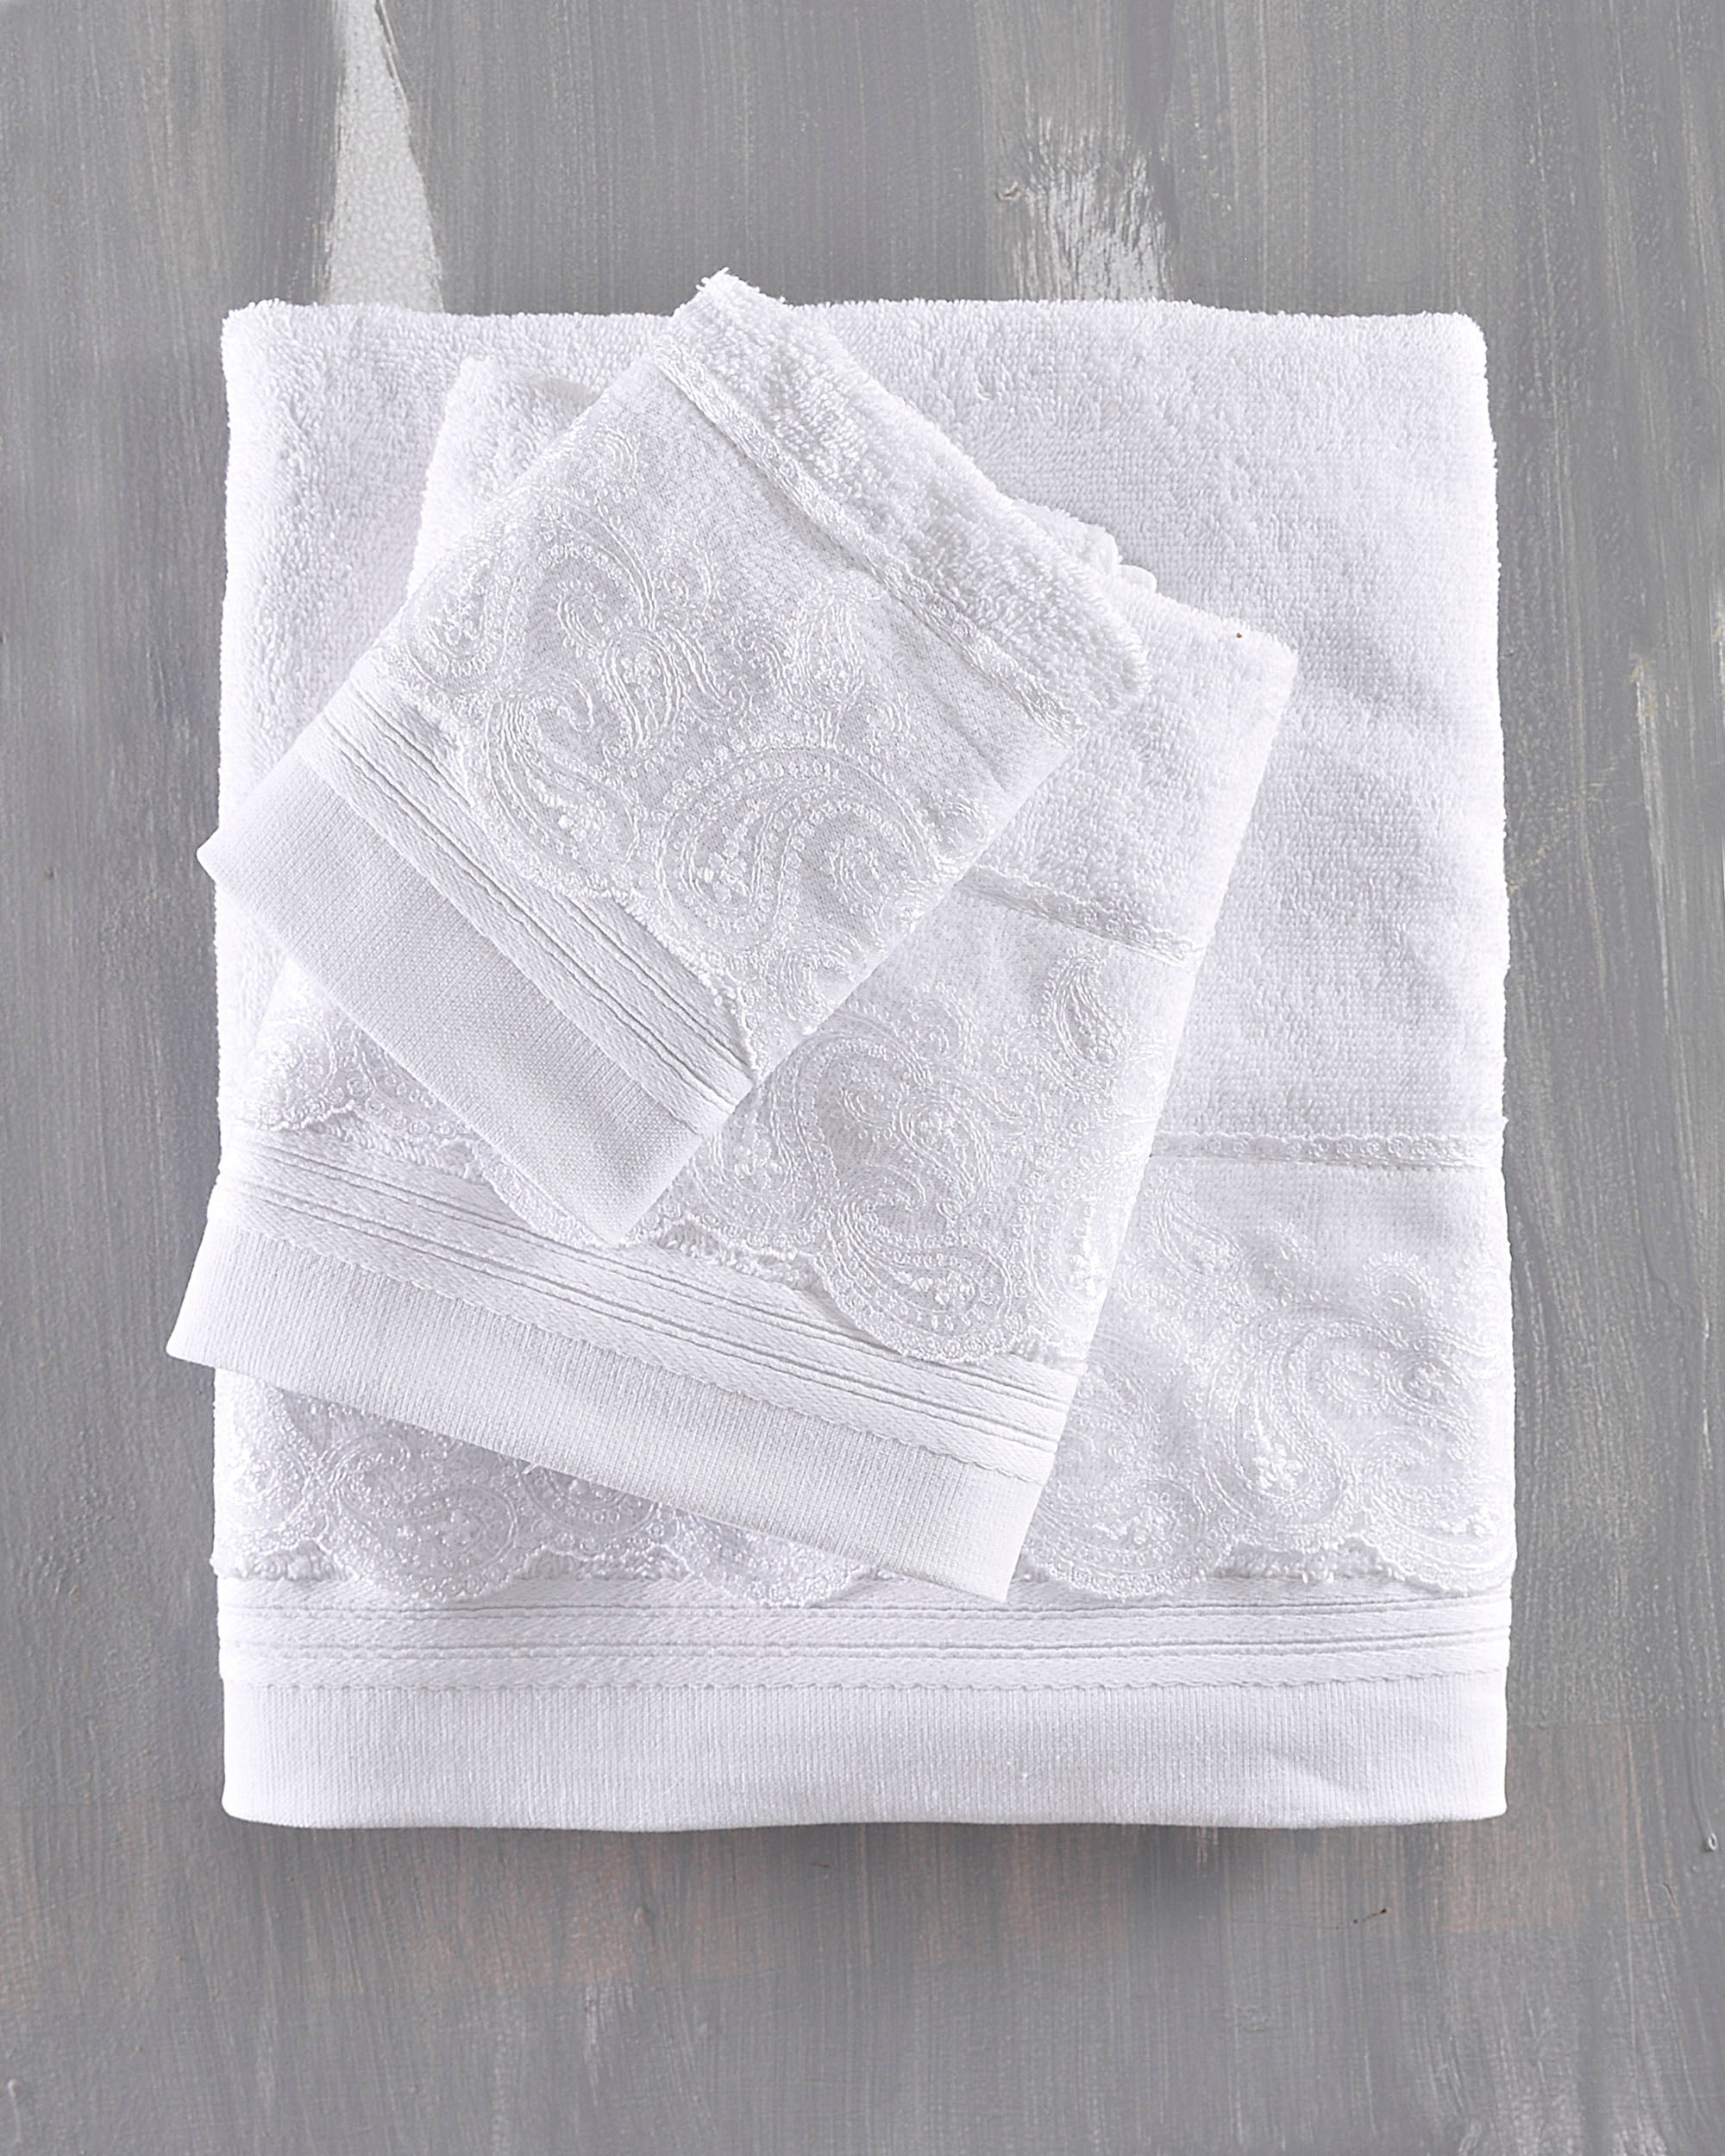 ANIKA - Σετ πετσέτες 3 τεμ. Σετ 3 Τεμαχίων Σε Κουτί Λευκό 30 x 50, 50 x 90, 80 x 150 από την εταιρεία Rythmos Home